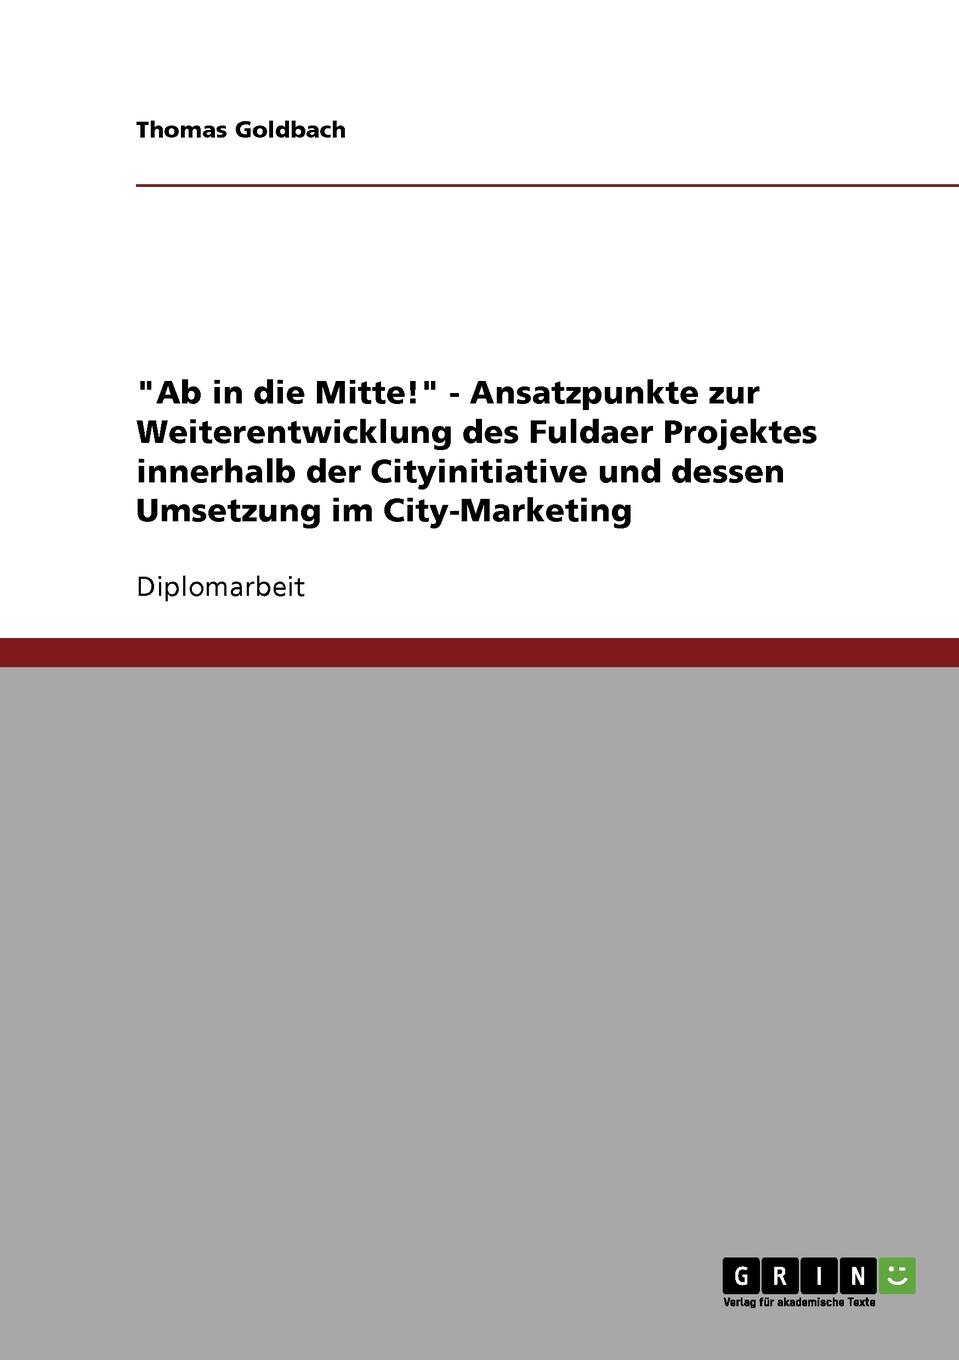 фото "Ab in die Mitte." - Ansatzpunkte zur Weiterentwicklung des Fuldaer Projektes innerhalb der Cityinitiative und dessen Umsetzung im City-Marketing